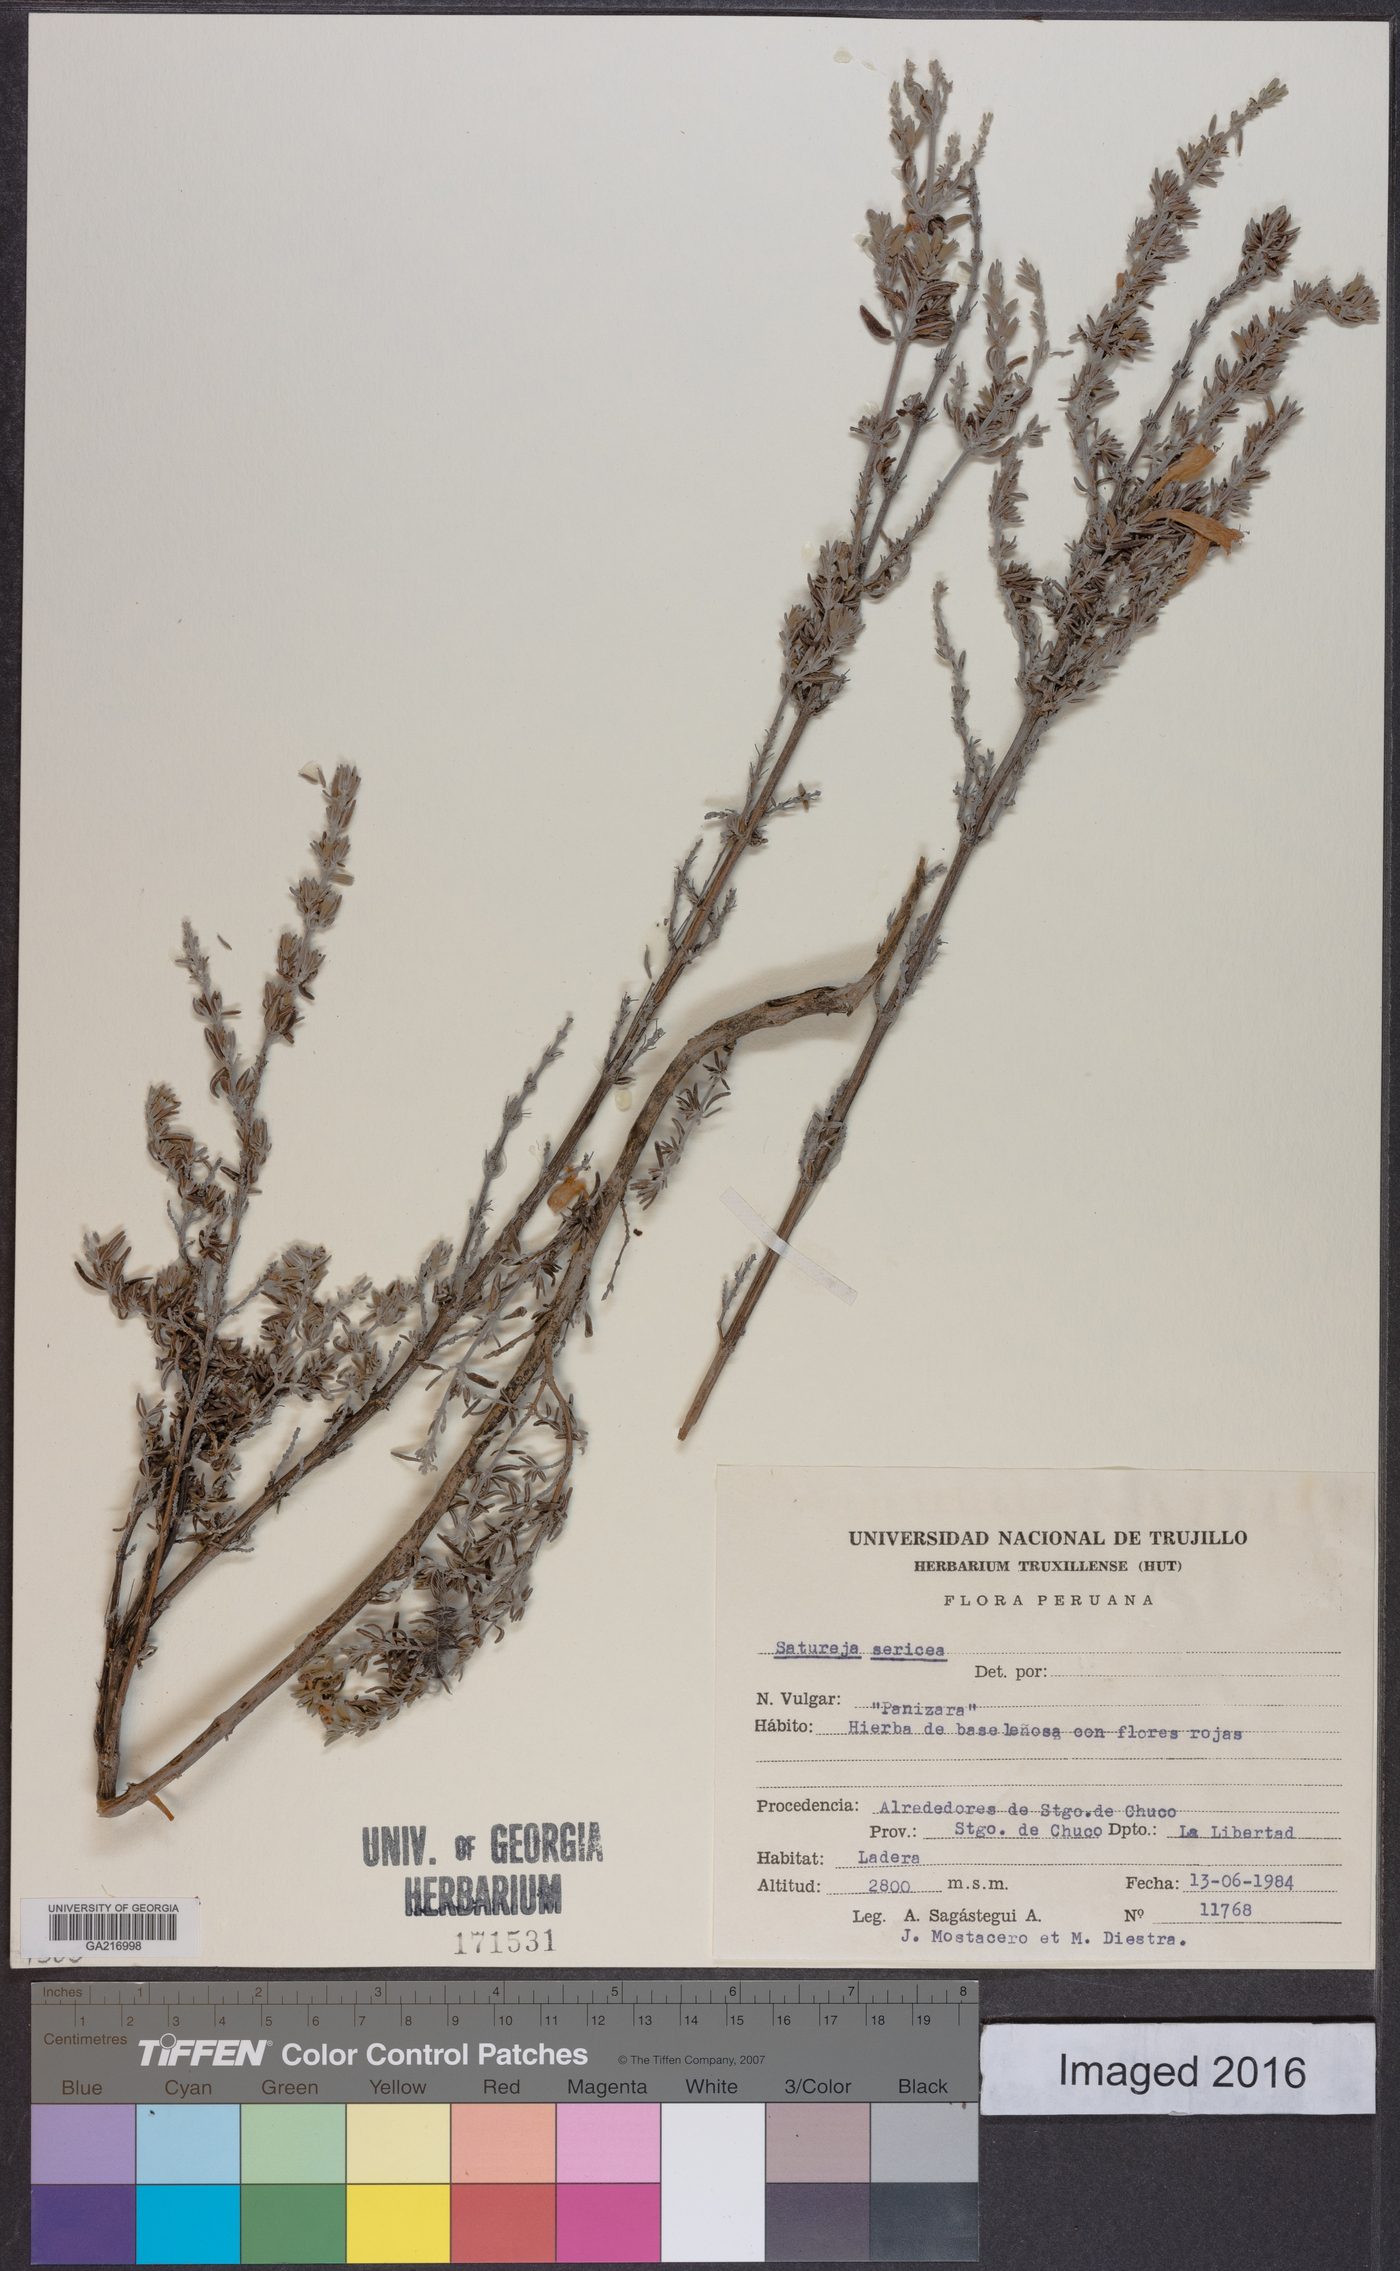 Clinopodium sericeum image